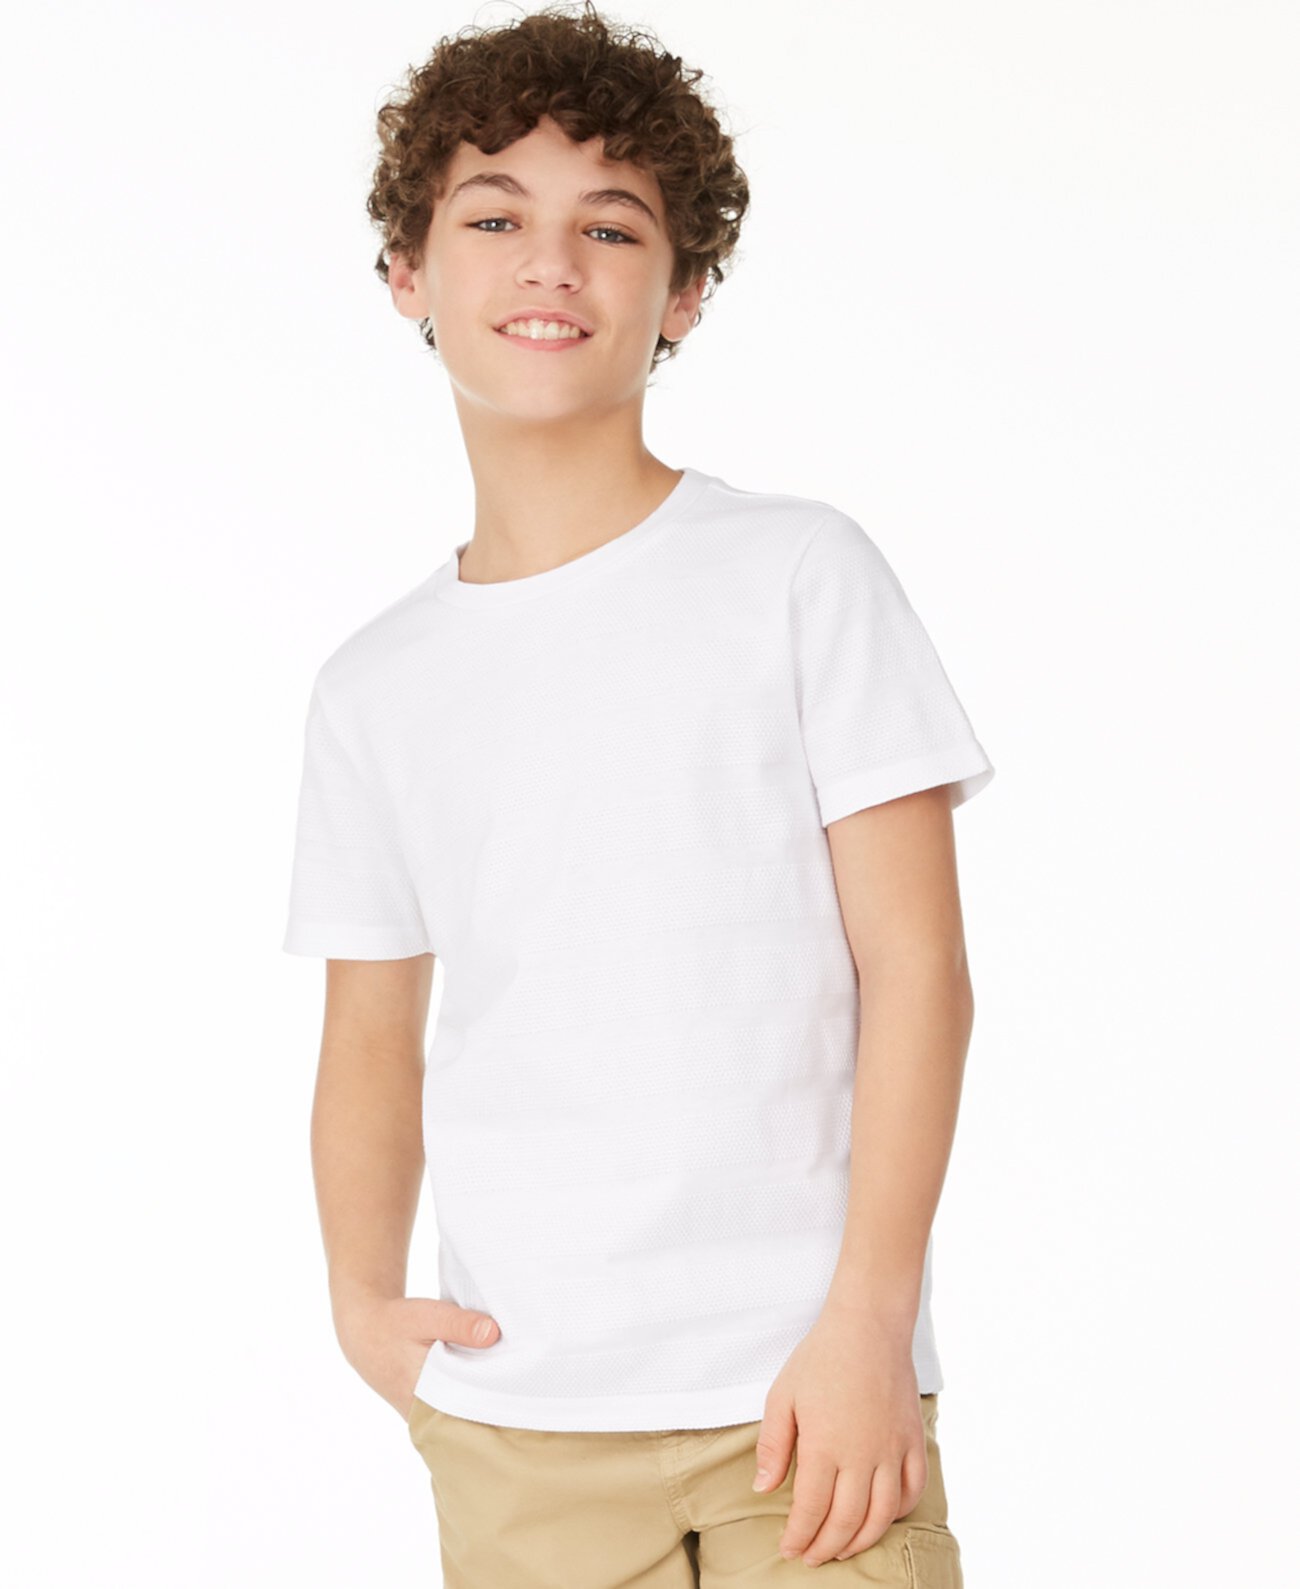 Текстурированная полосатая футболка Big Boys для Macy's Epic Threads